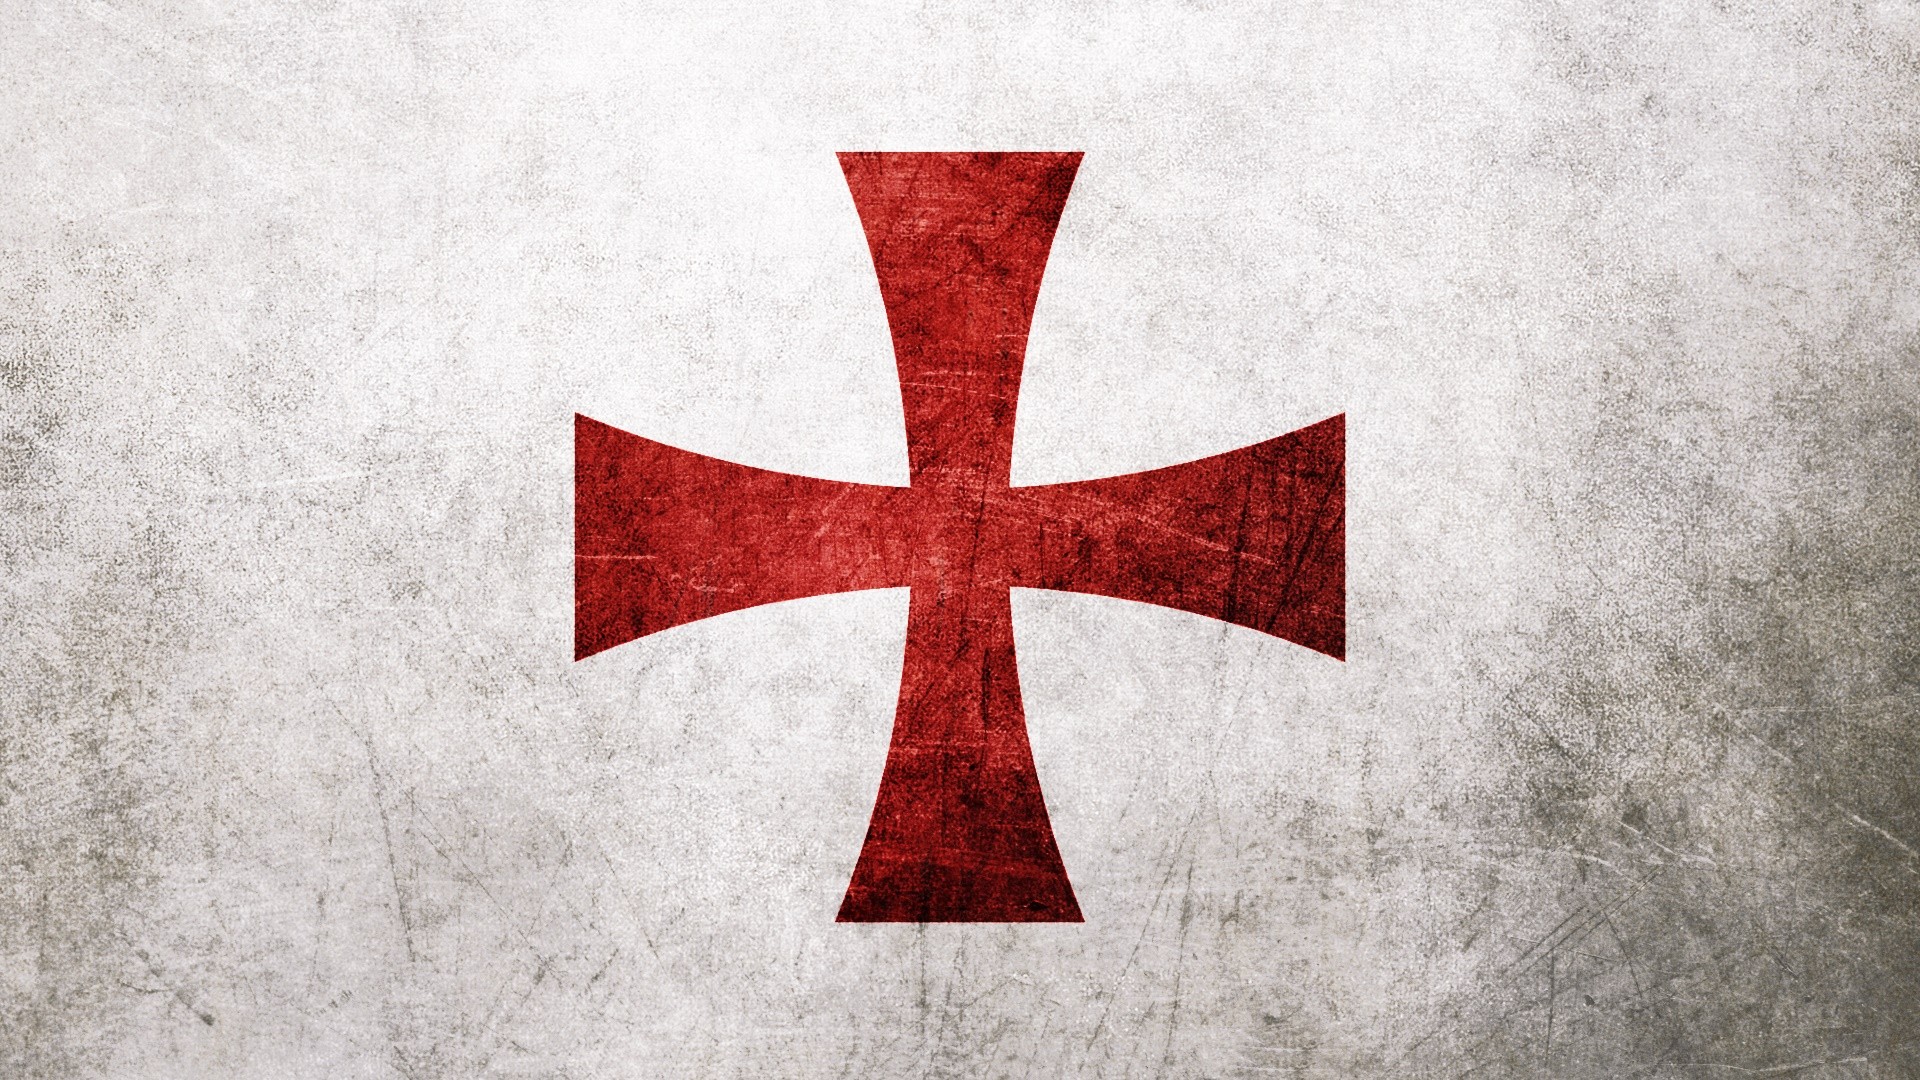 Christianity Cross Knights Templar Assassins Creed Wallpaper